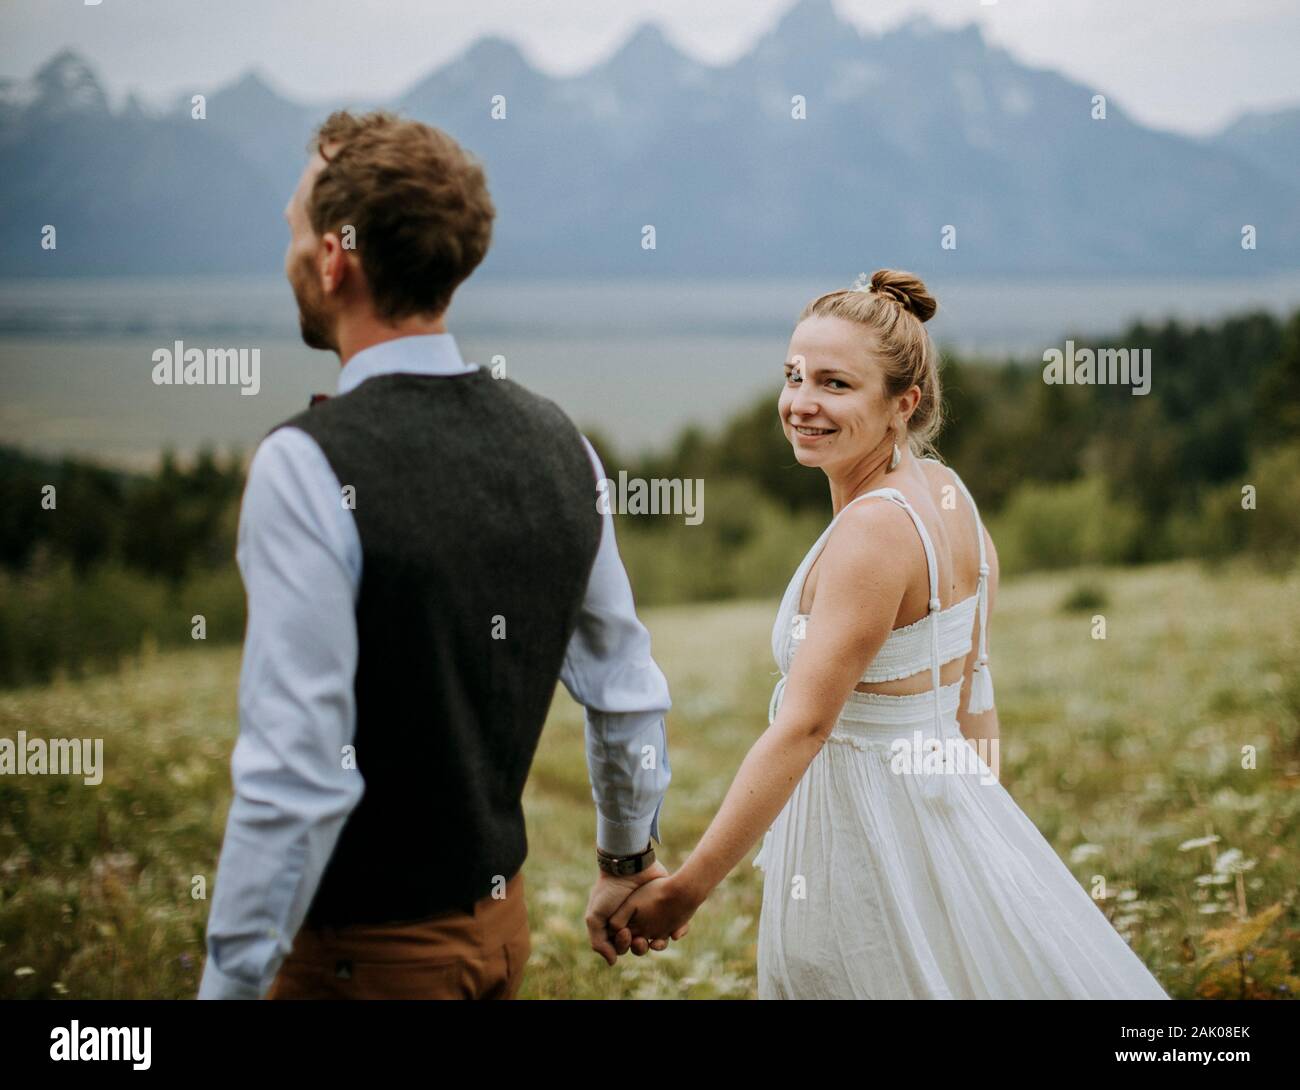 Braut und Bräutigam halten die Hände, während sie durch das Blumenfeld gehen Stockfoto